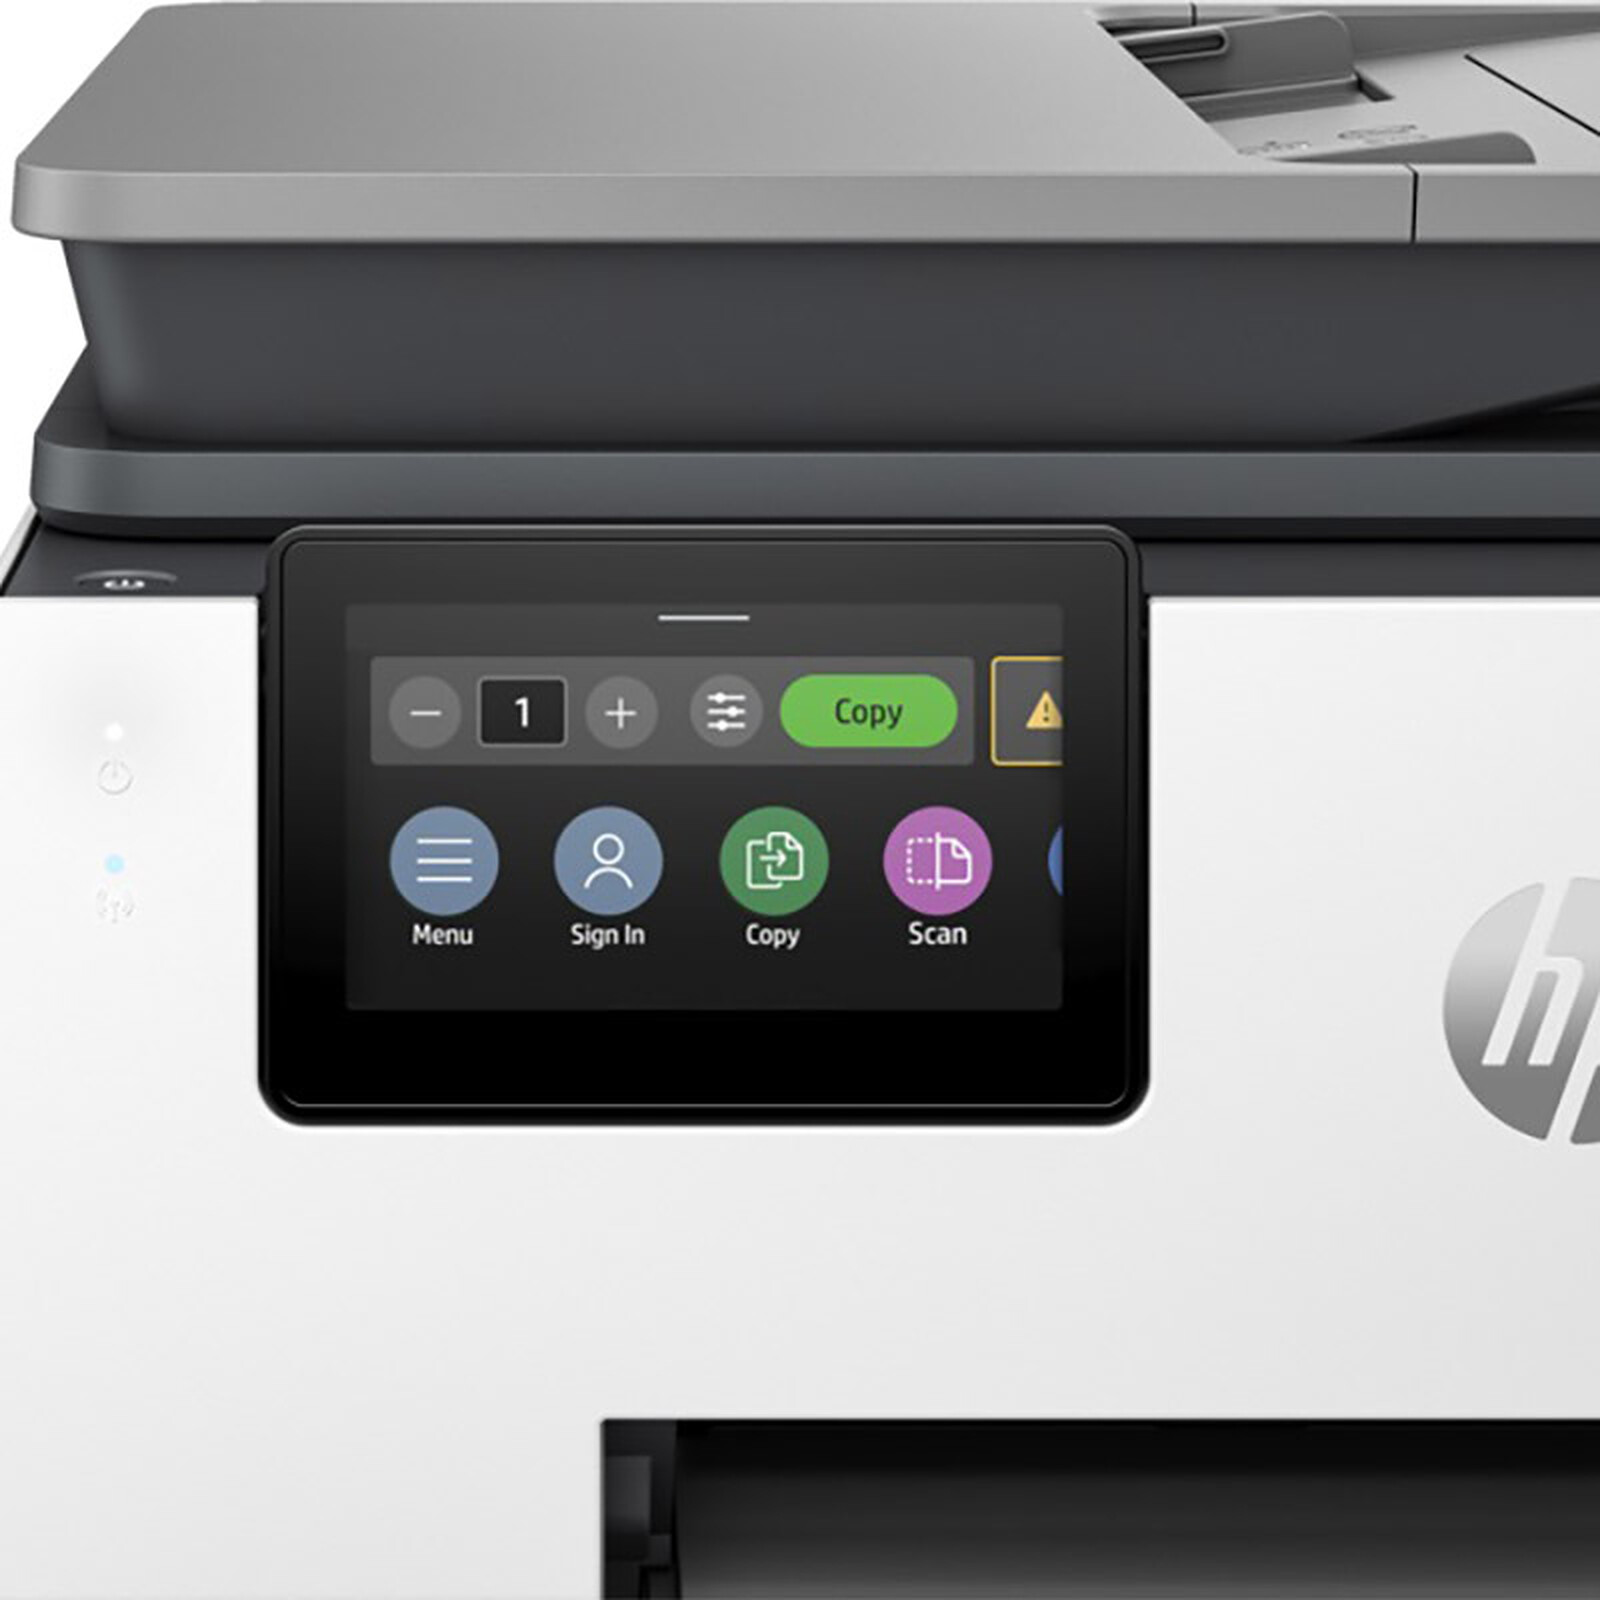 HP Officejet Pro 8720 - Imprimante multifonction - Garantie 3 ans LDLC